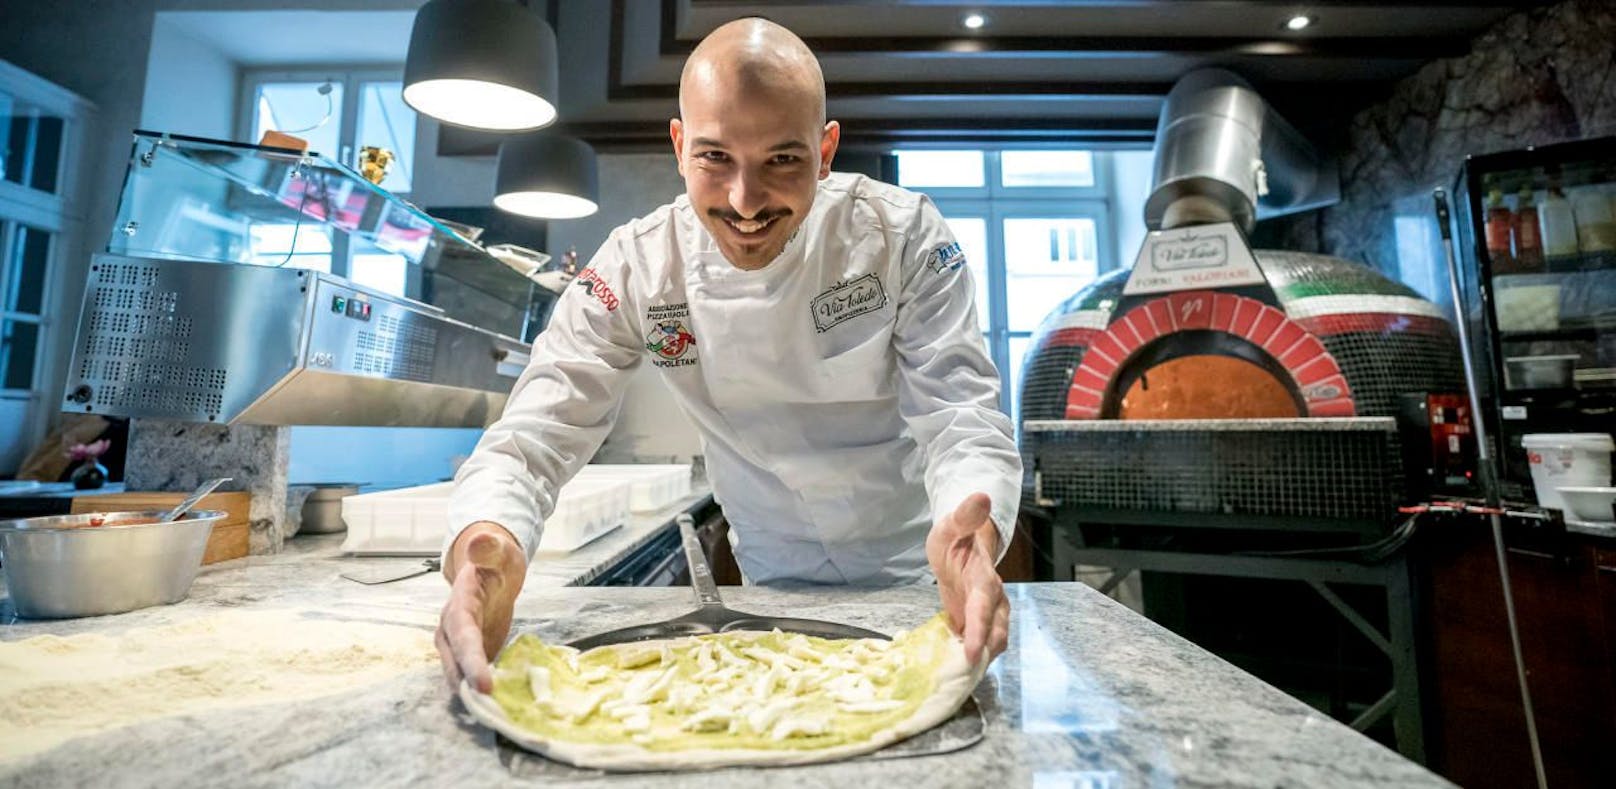 Francesco Calò macht die besten Pizzen in ganz Österreich.